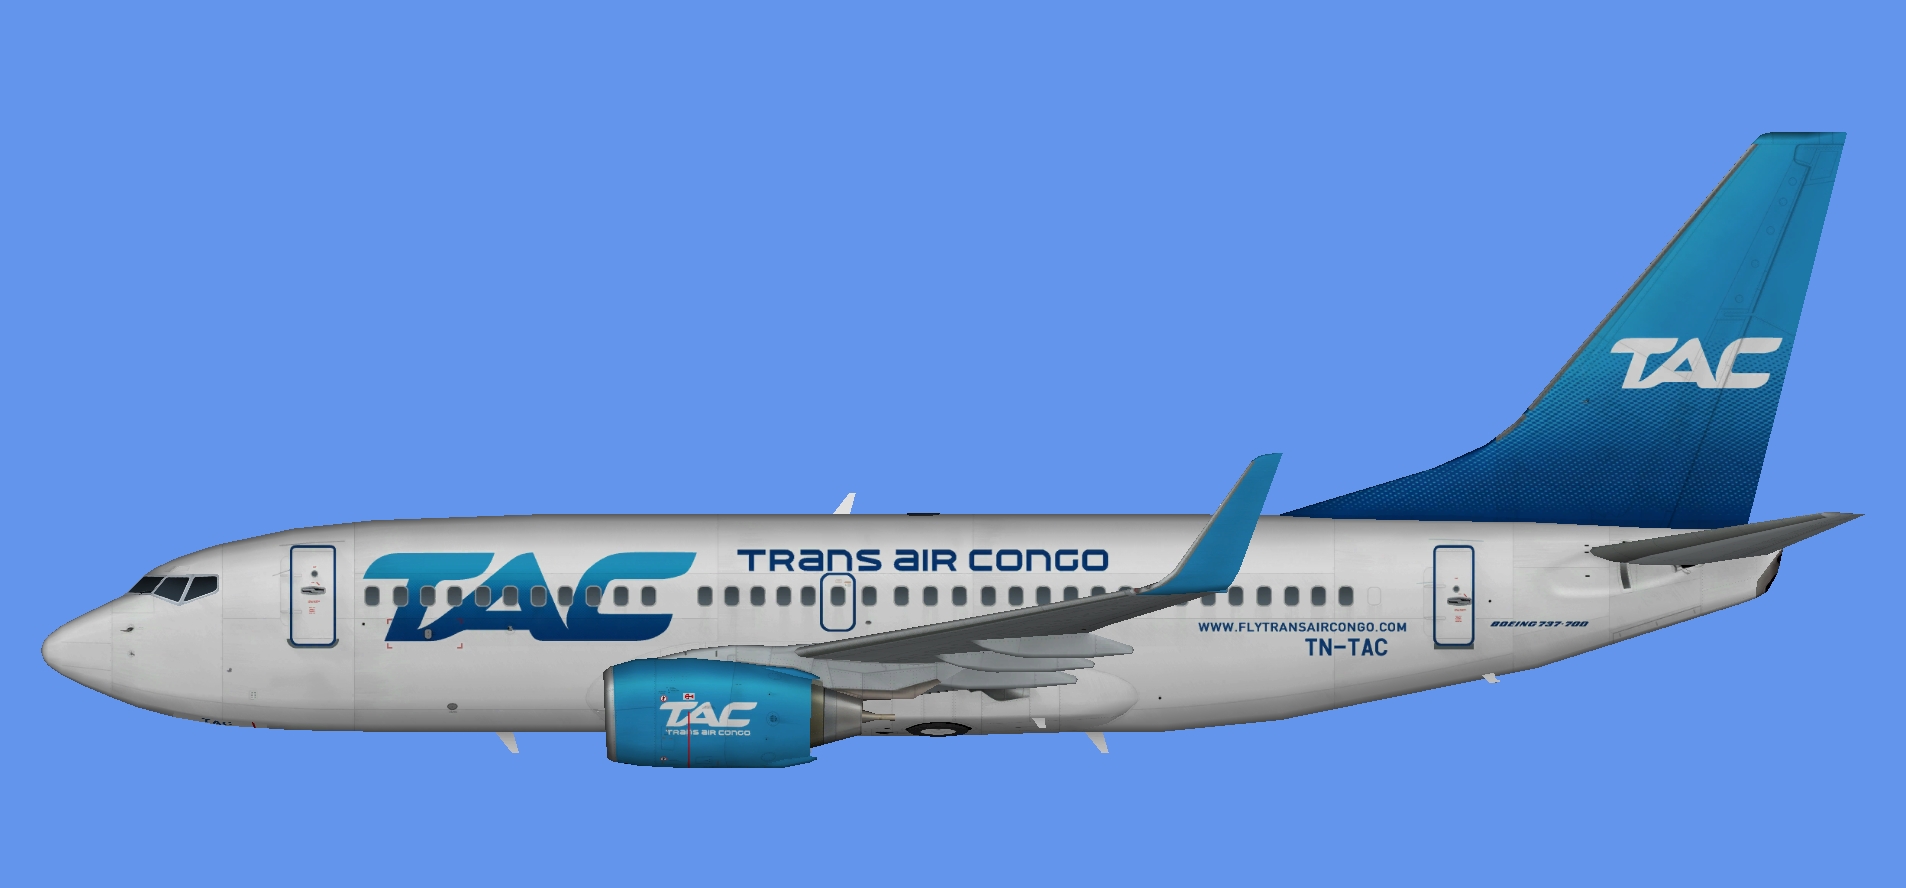 Trans Air Congo Boeing 737-700w